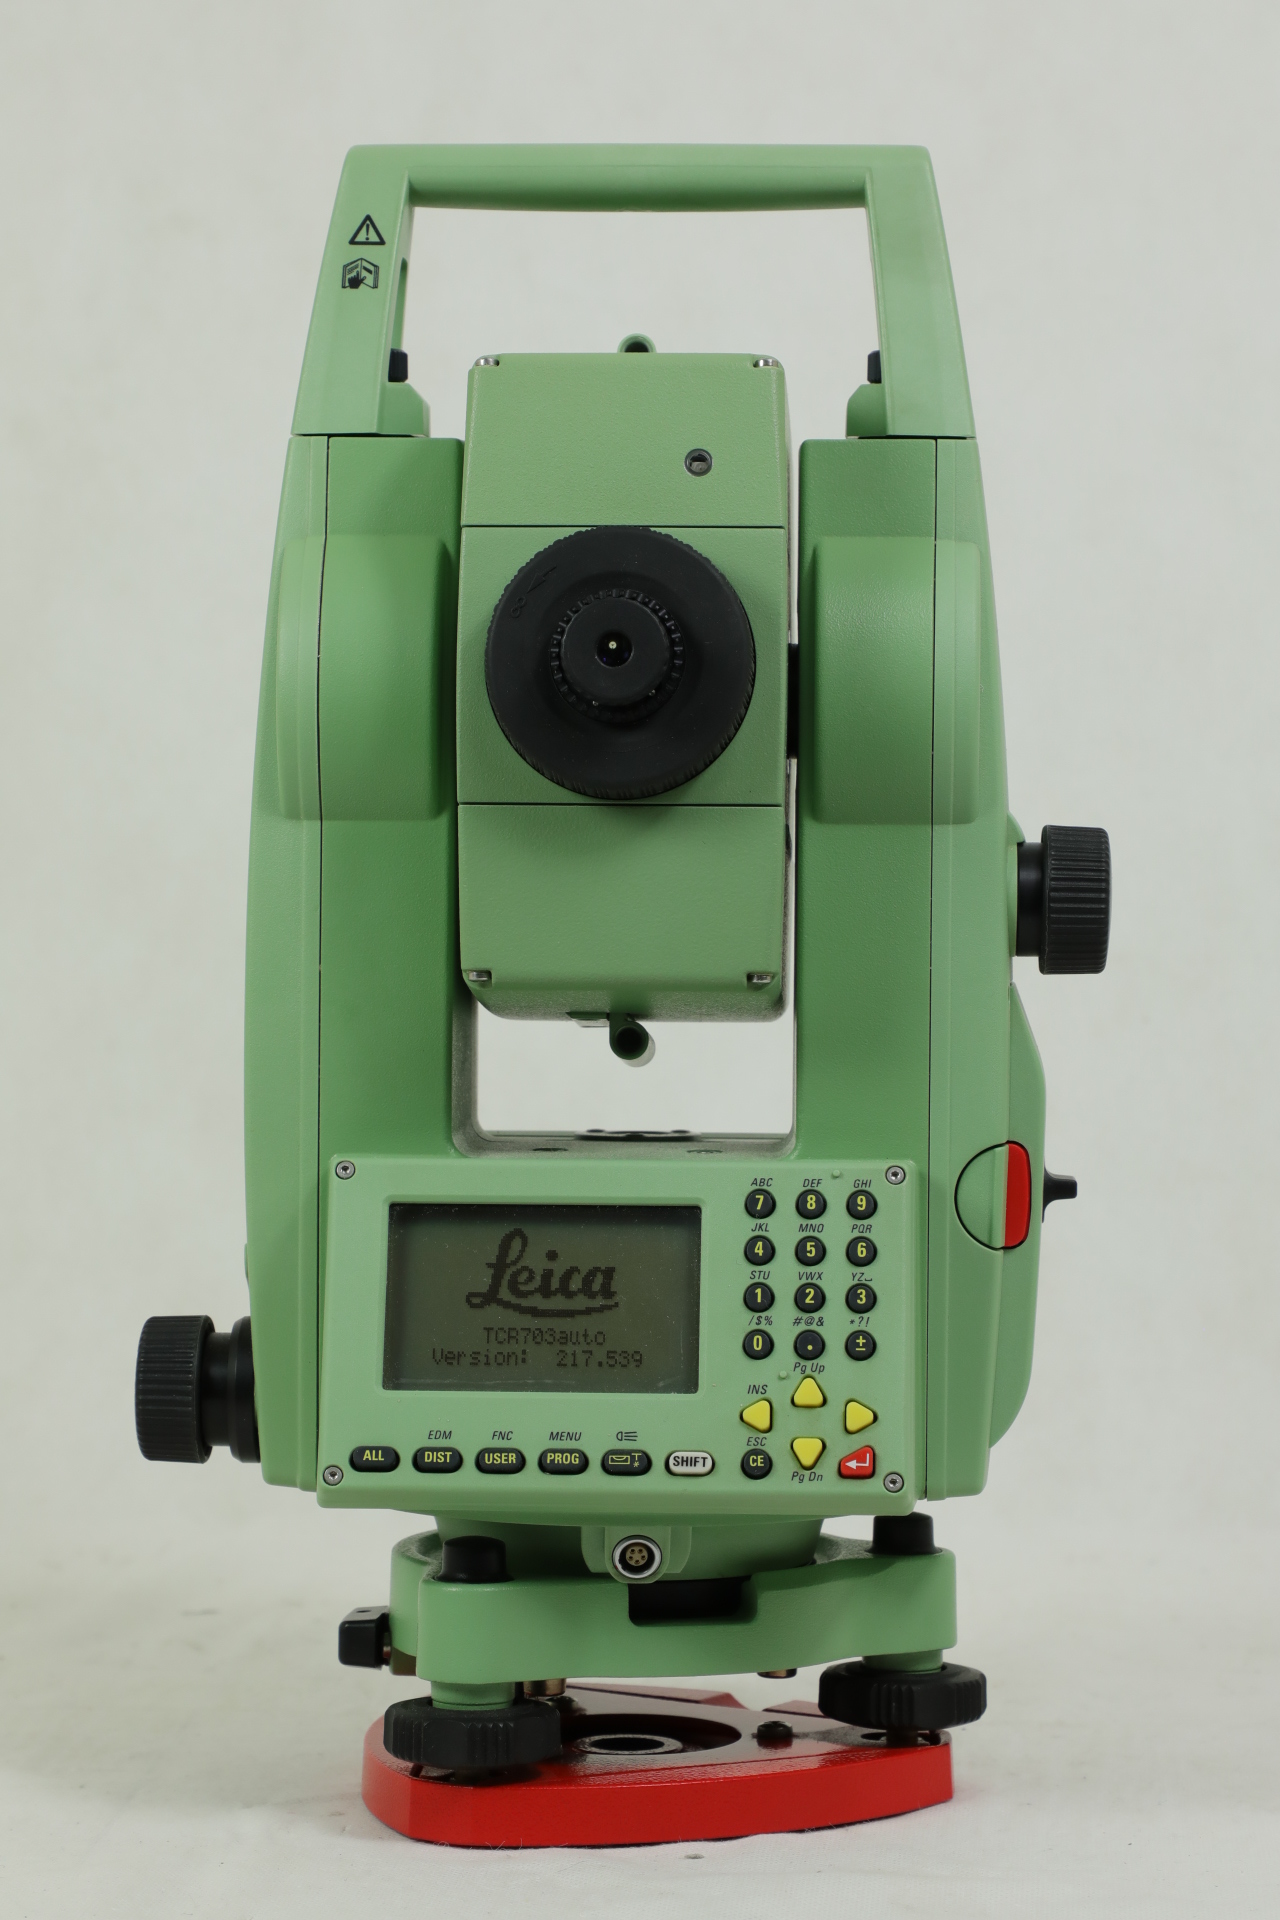 【ベスト】Leica　TCR703Auto 測量、角度計